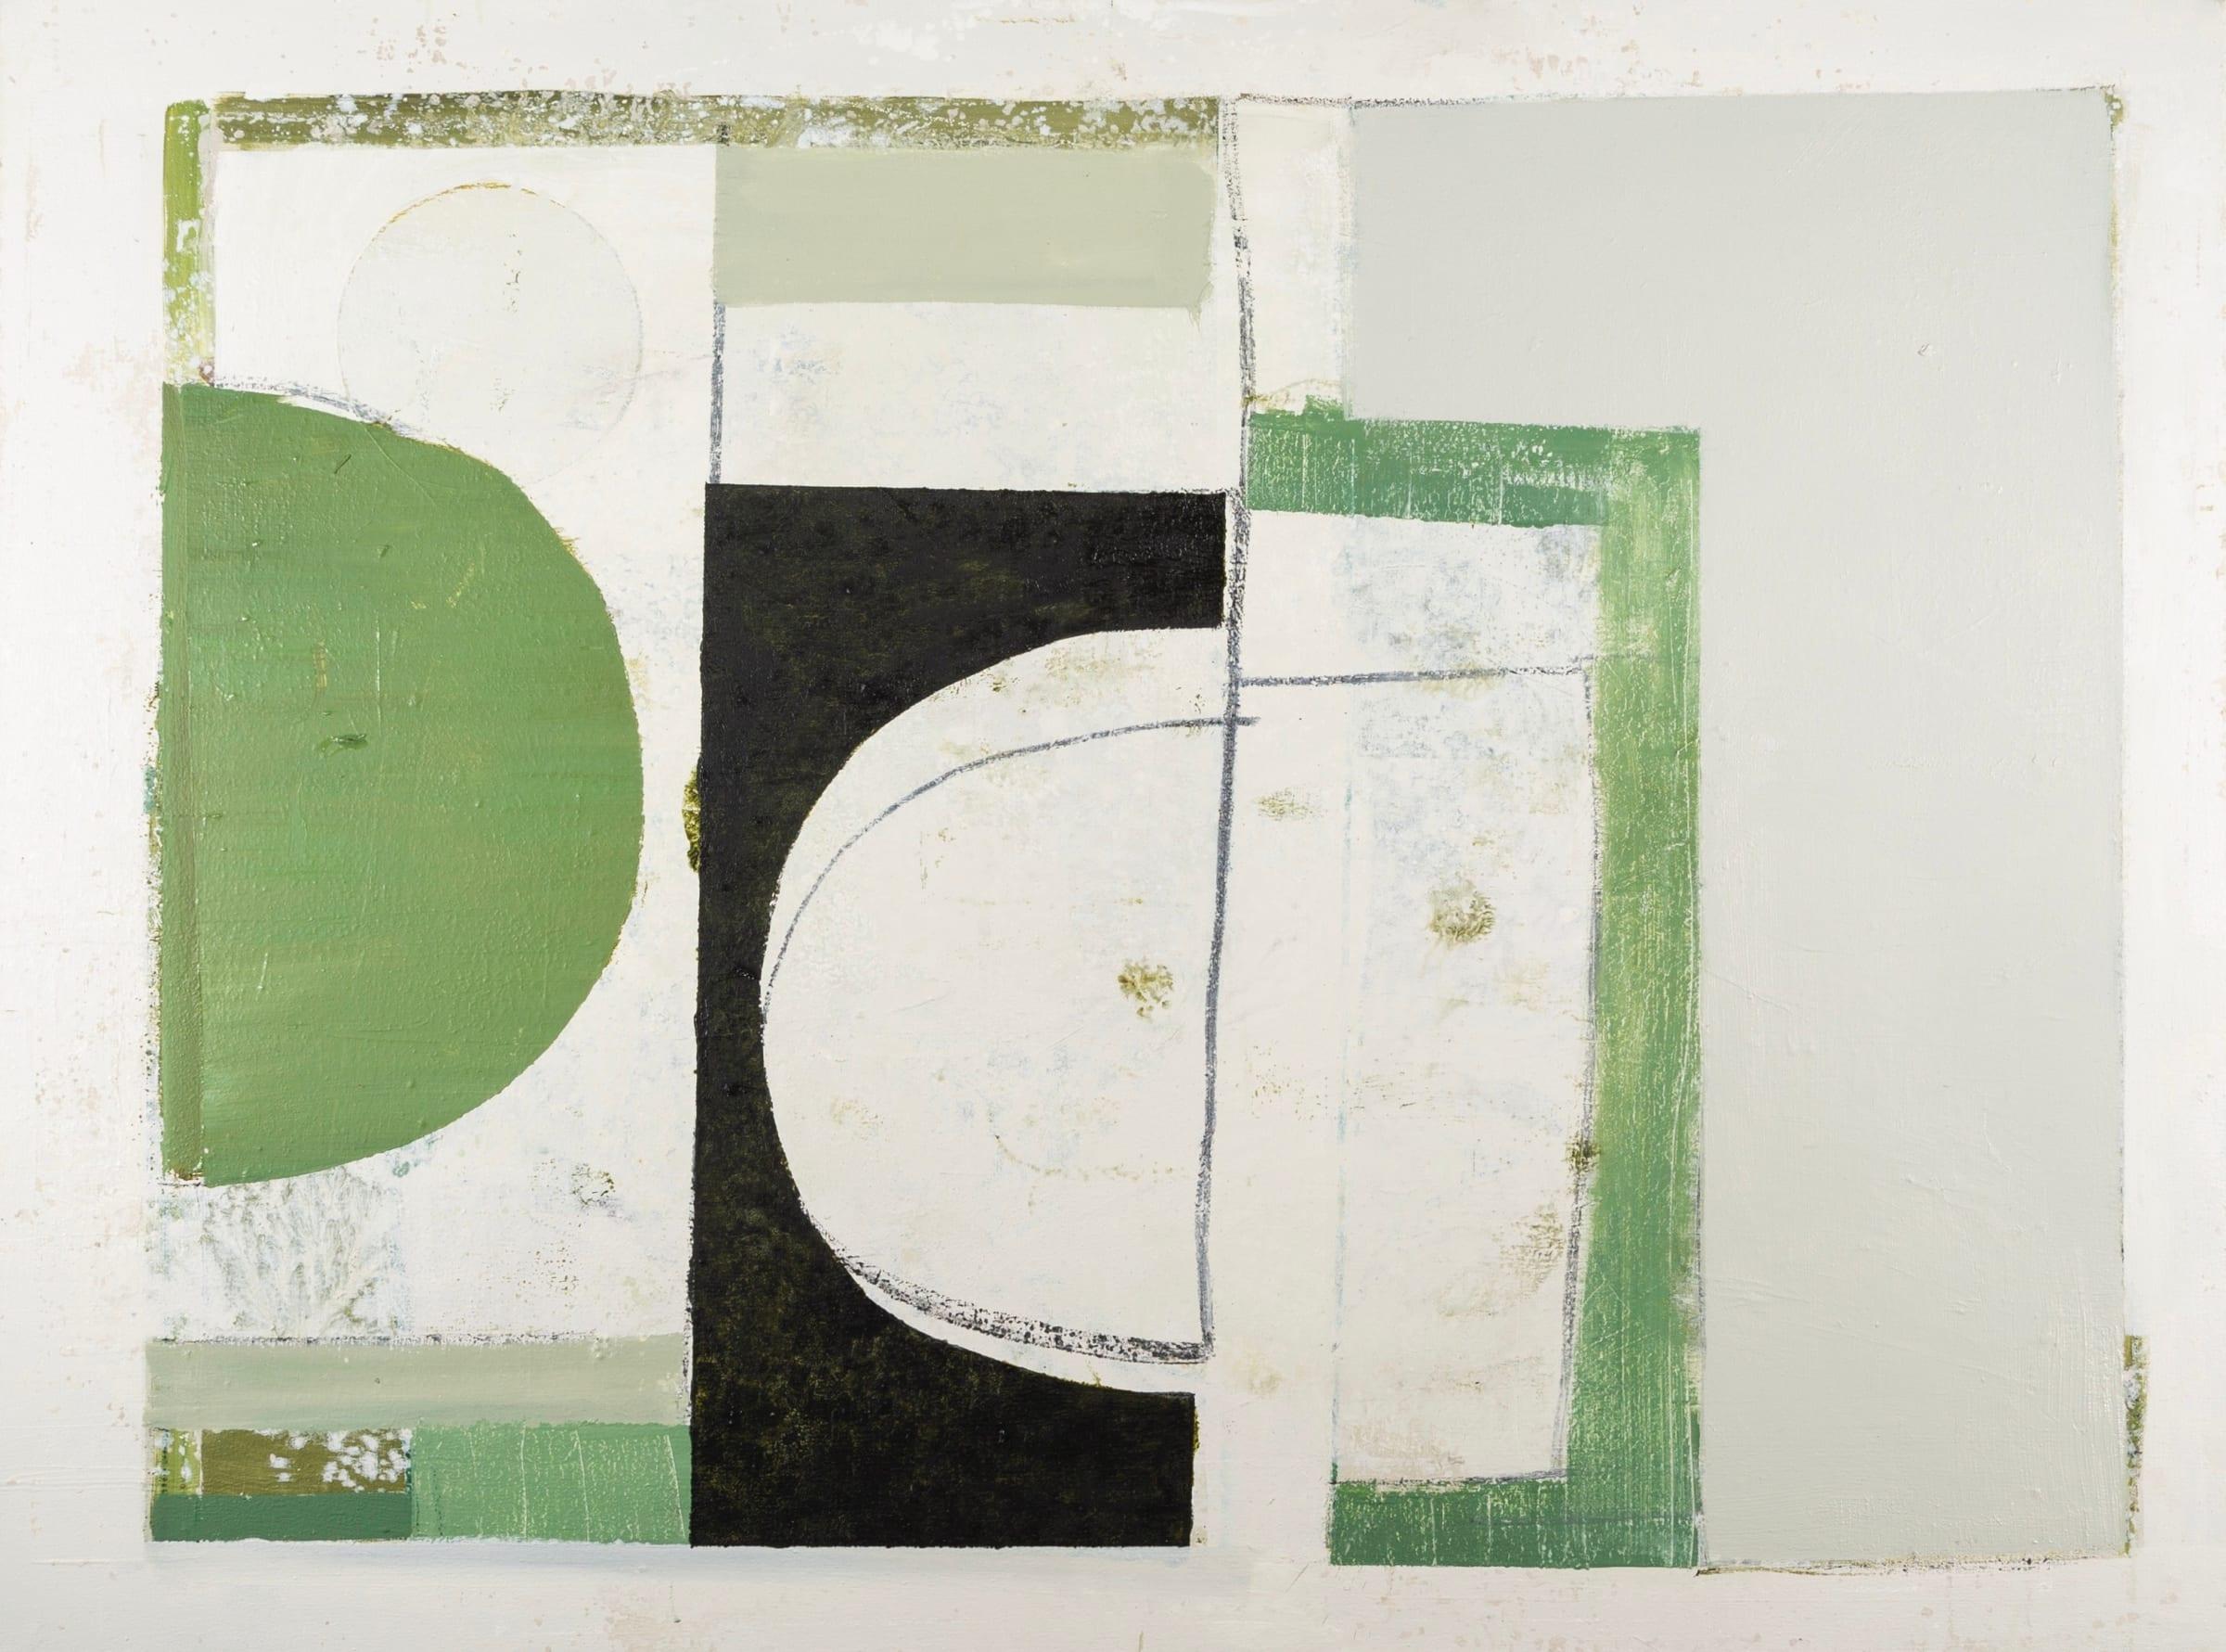 Shape of Space (Green), Öl auf Leinwand Gemälde von Daisy Cook B. 1965, 2021

Zusätzliche Informationen:
Medium: Öl auf Leinwand
Abmessungen: 76 x 101 cm
29 7/8 x 39 3/4 in
Unterzeichnet und datiert

Daisy Cook ist eine britische Malerin von